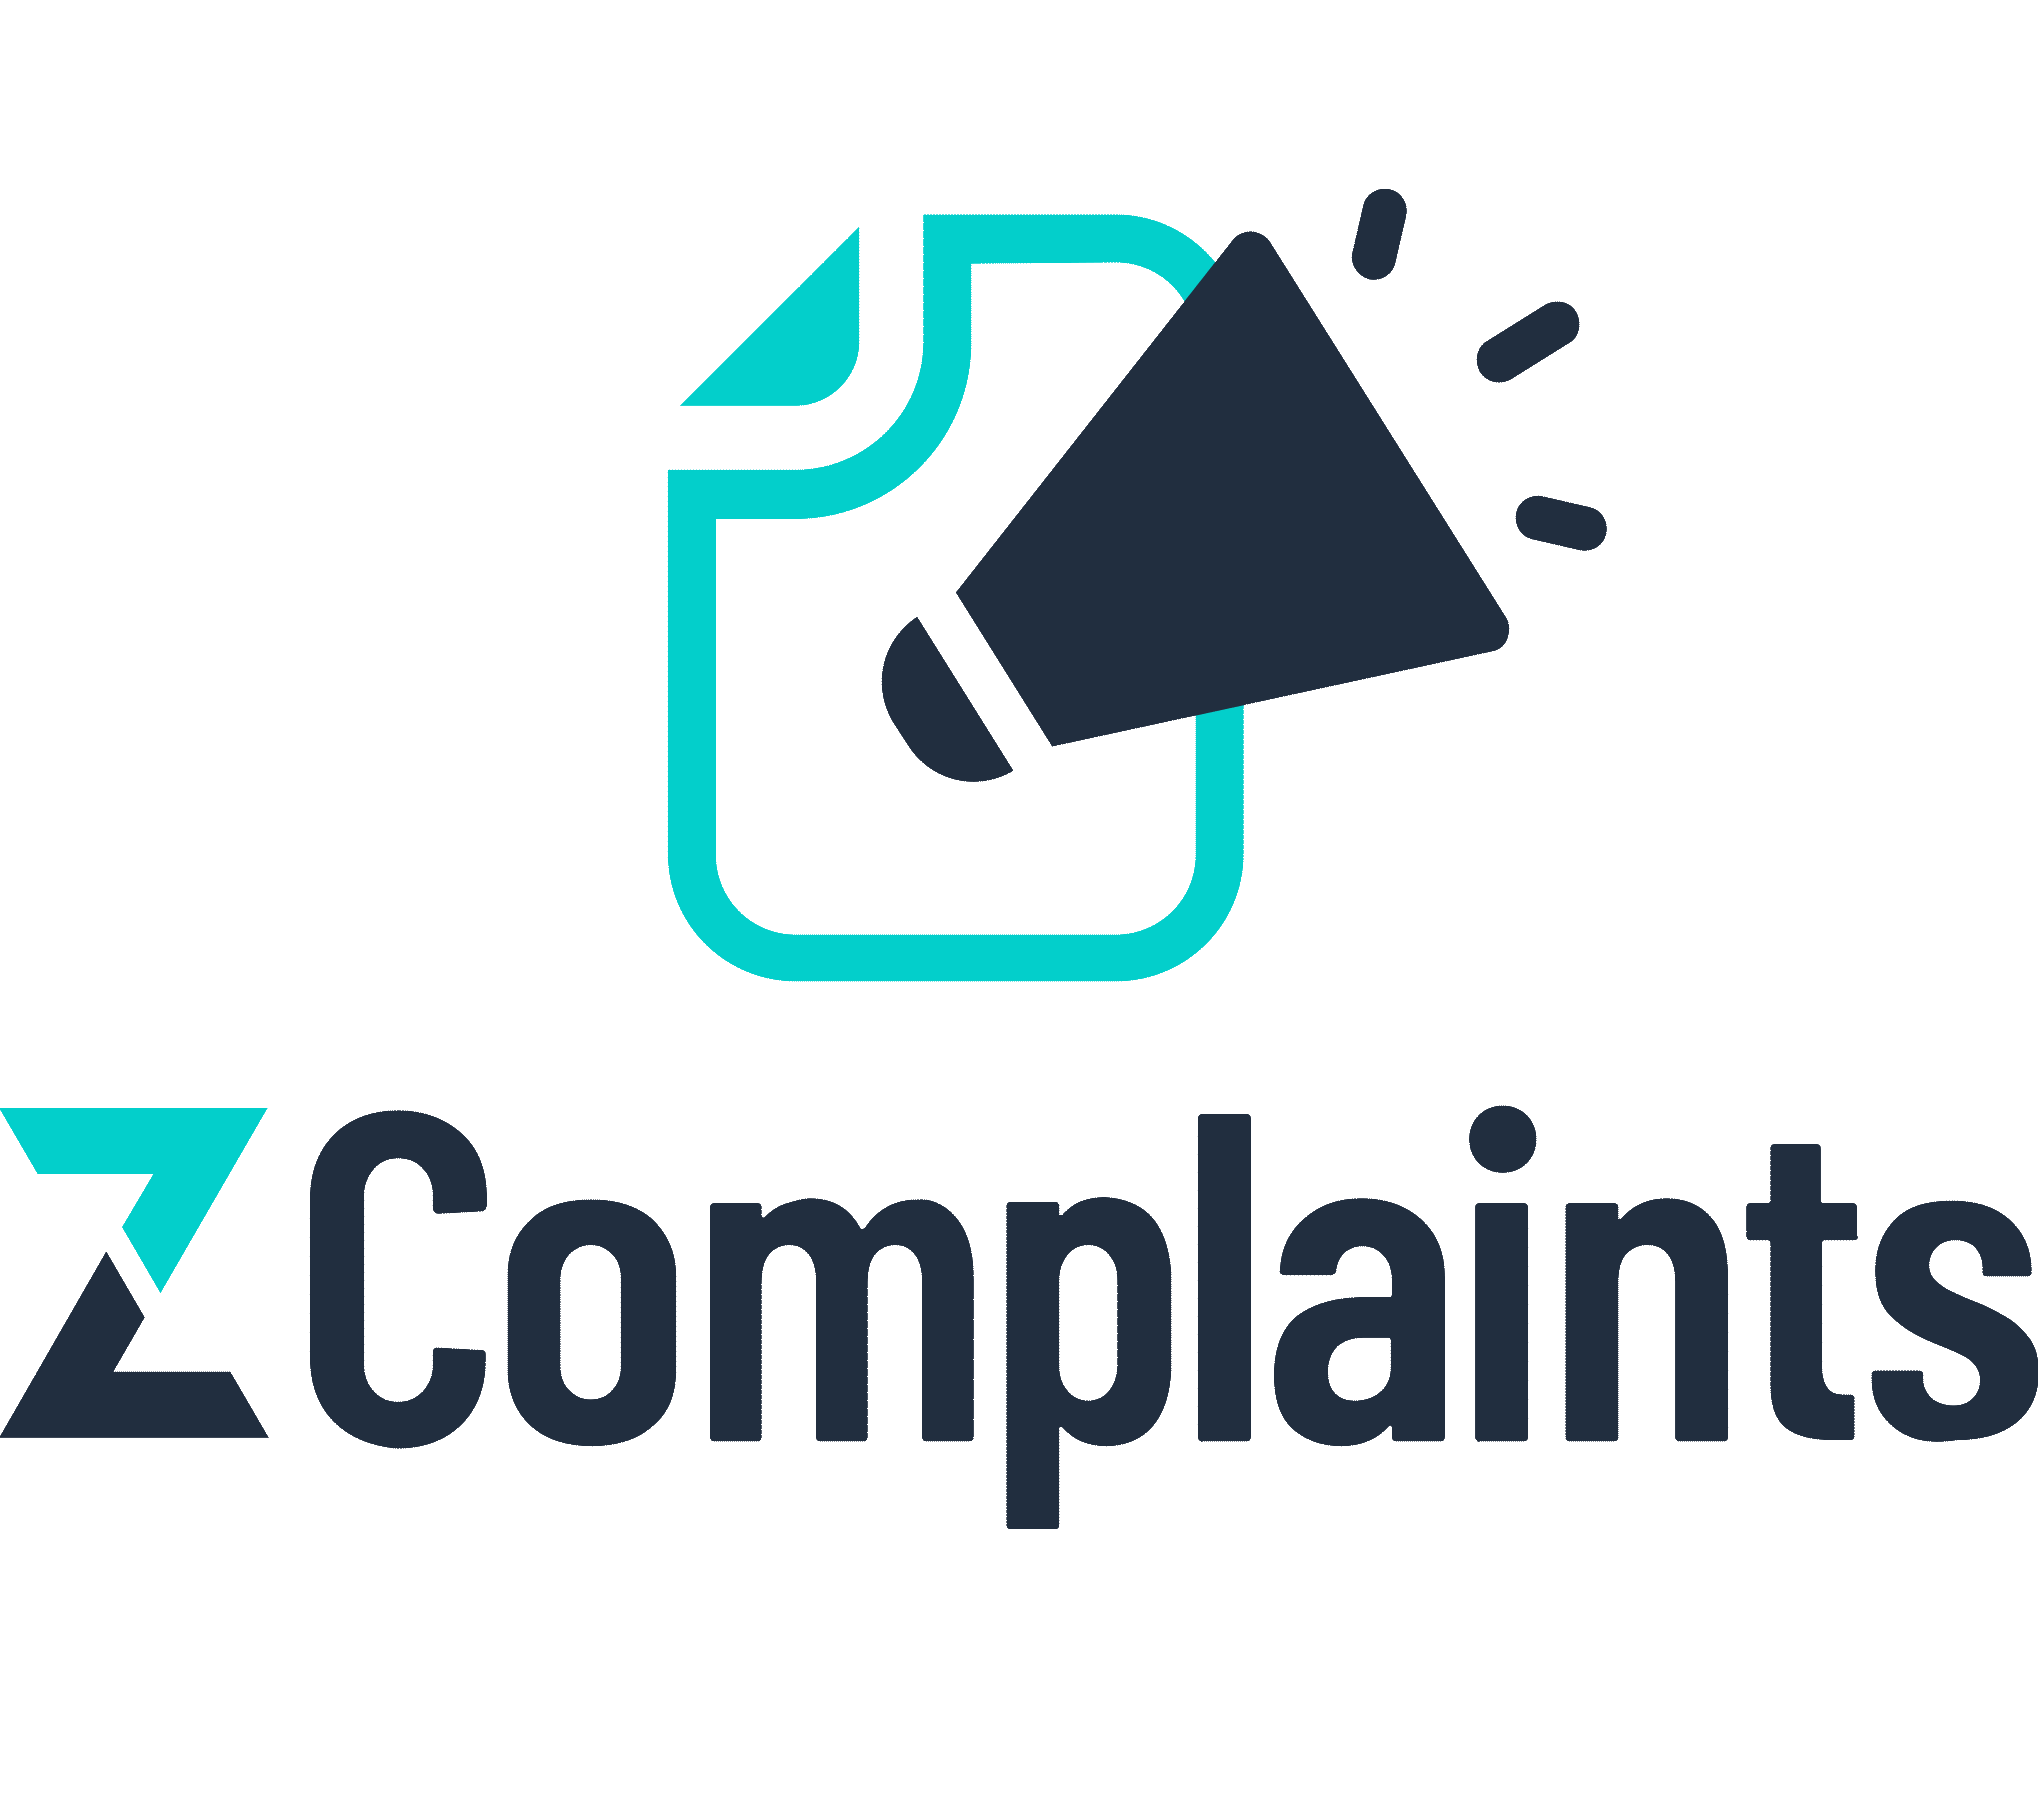 Z-Complaints